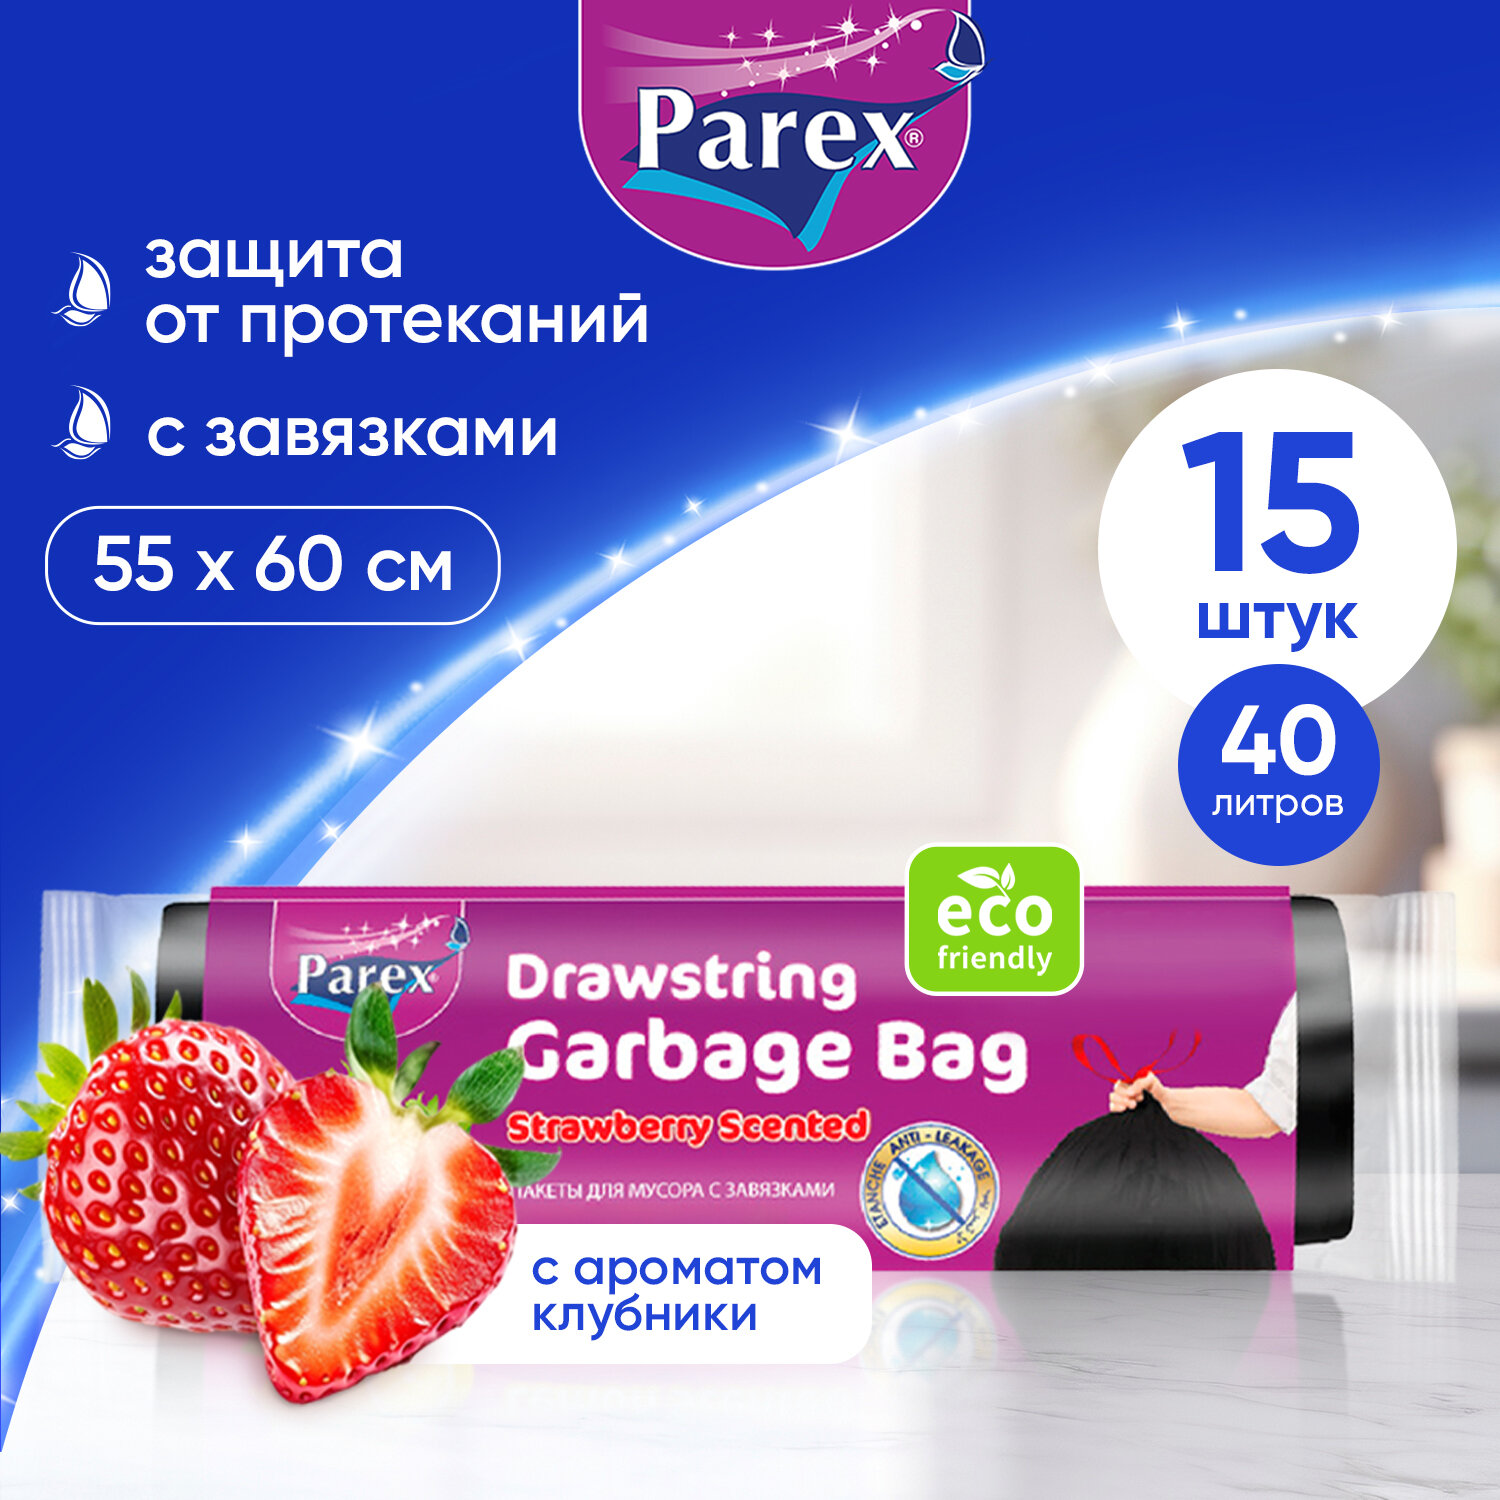 Пакеты для мусора Parex с завязками и ароматом клубники, биоразлагаемые 15 шт, 40 литров